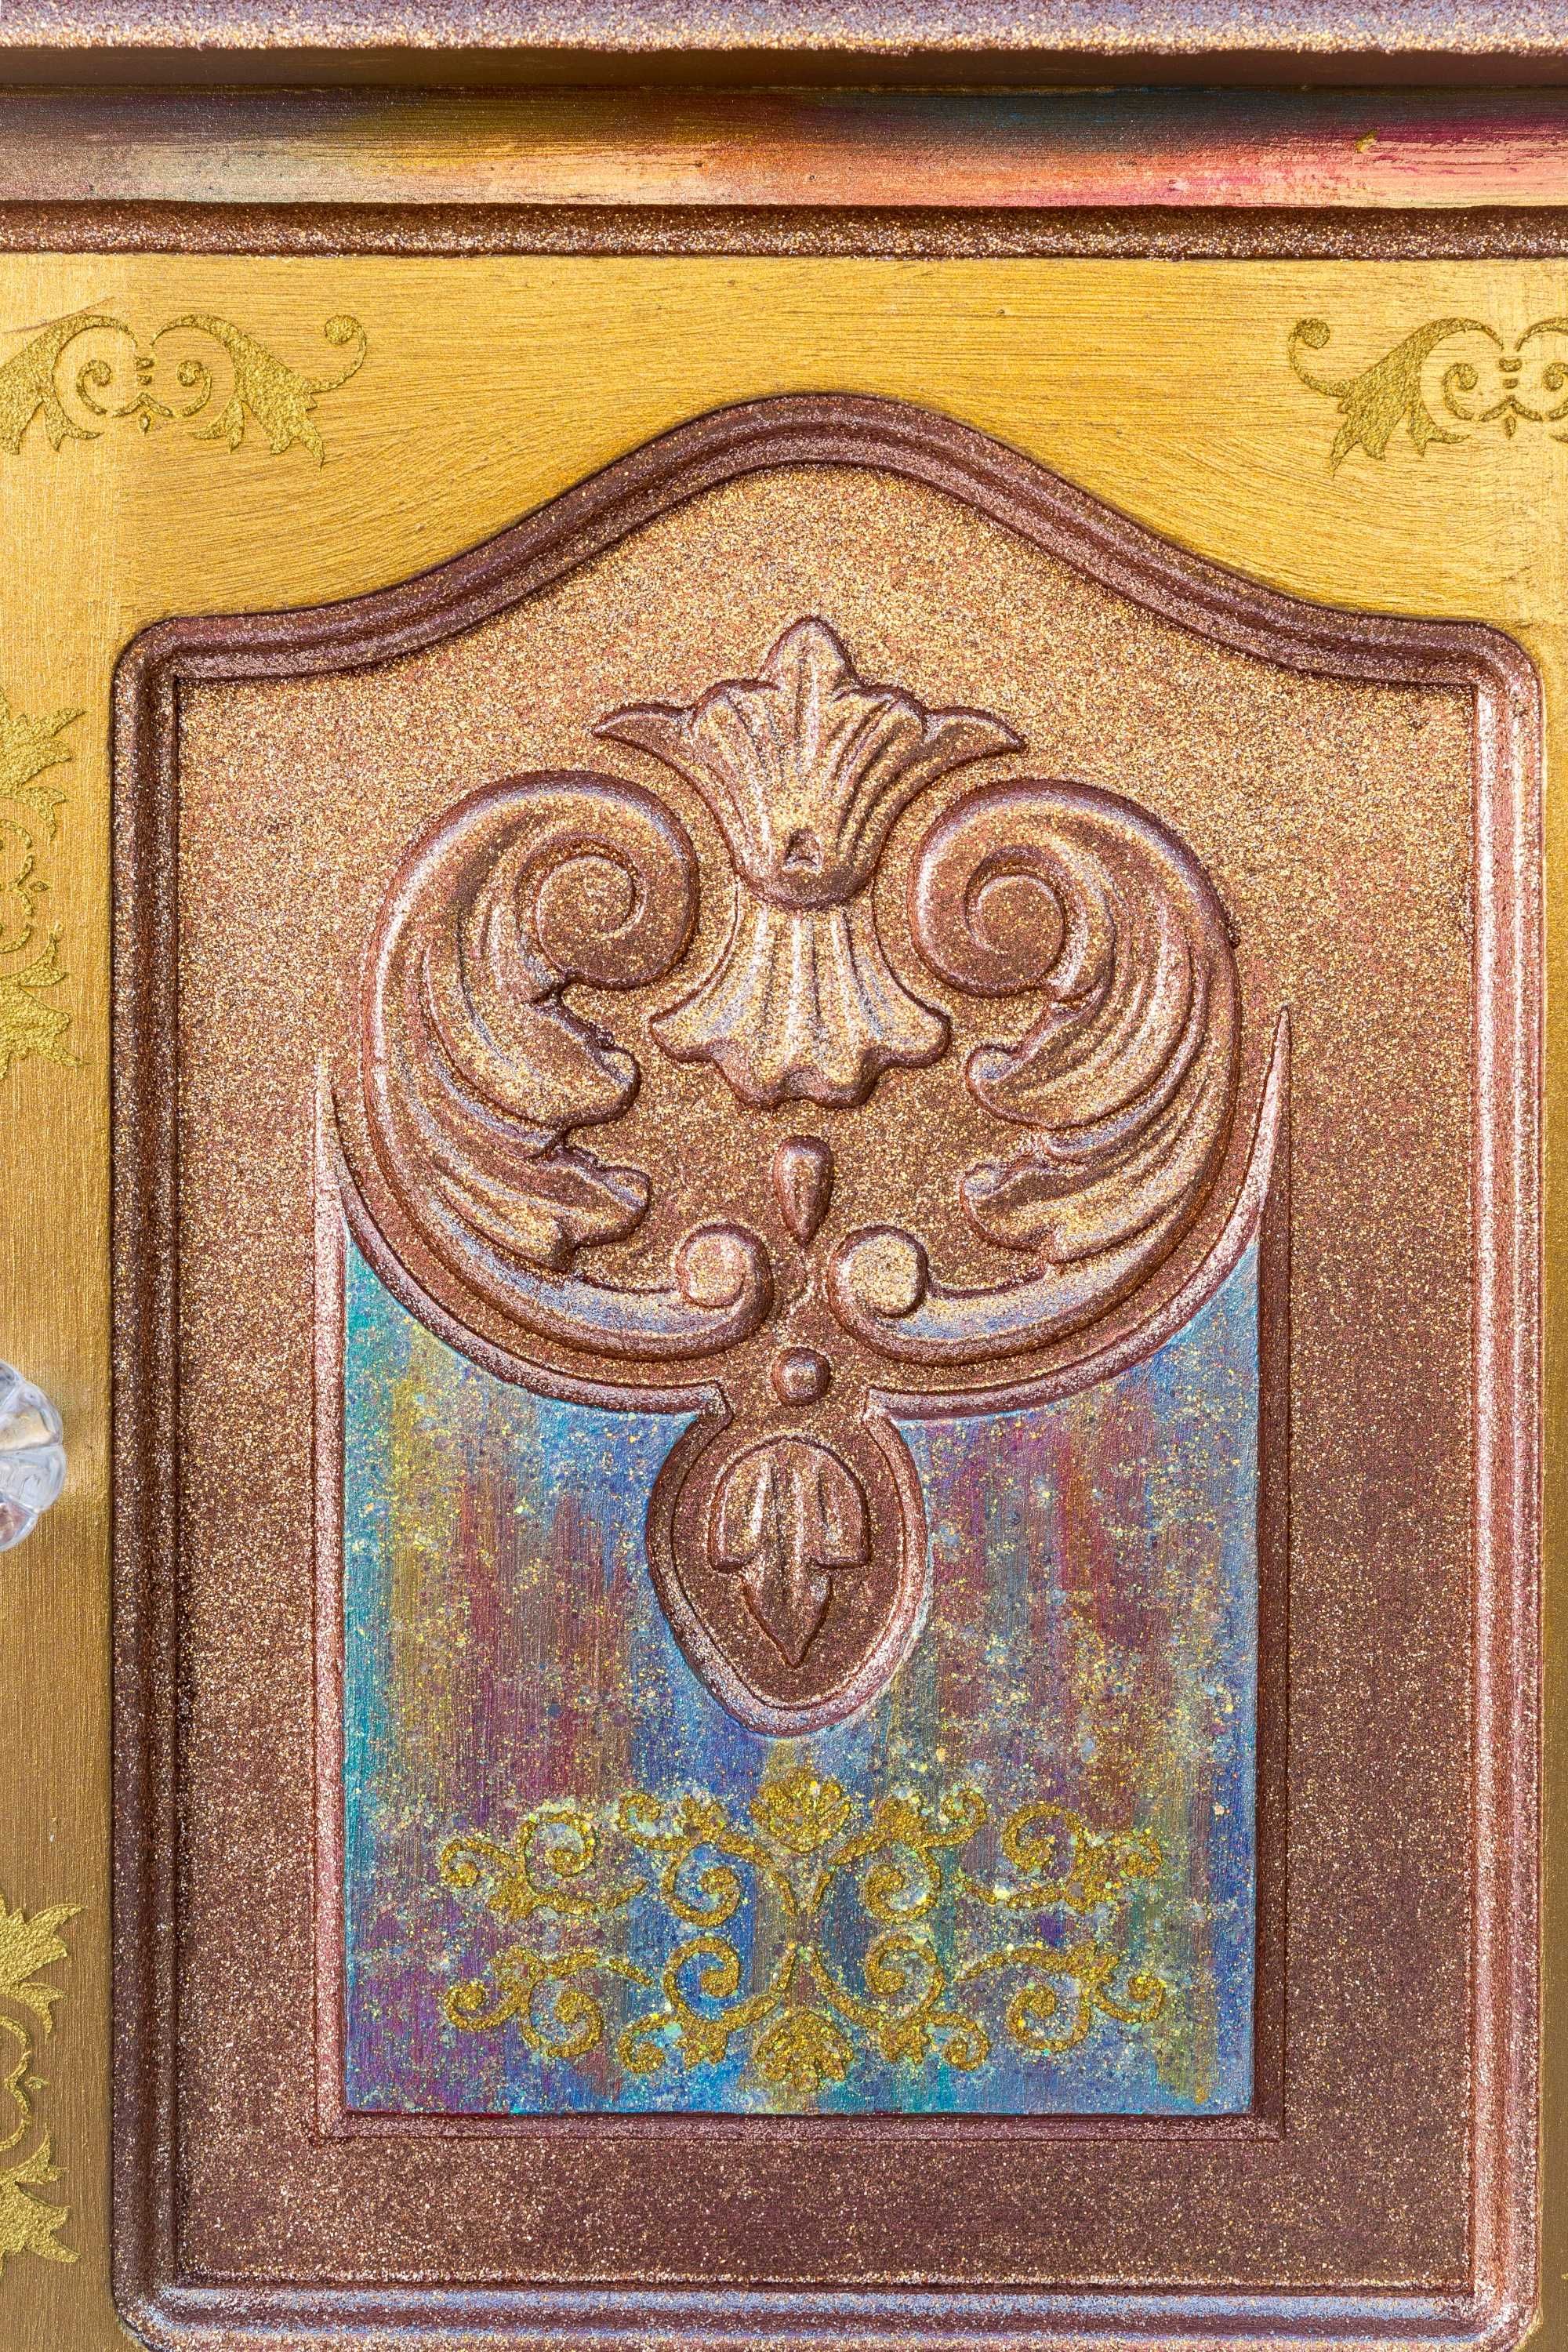 Ръчно рисуван дъбов скрин. Богата златна декорация в различни нюанси.